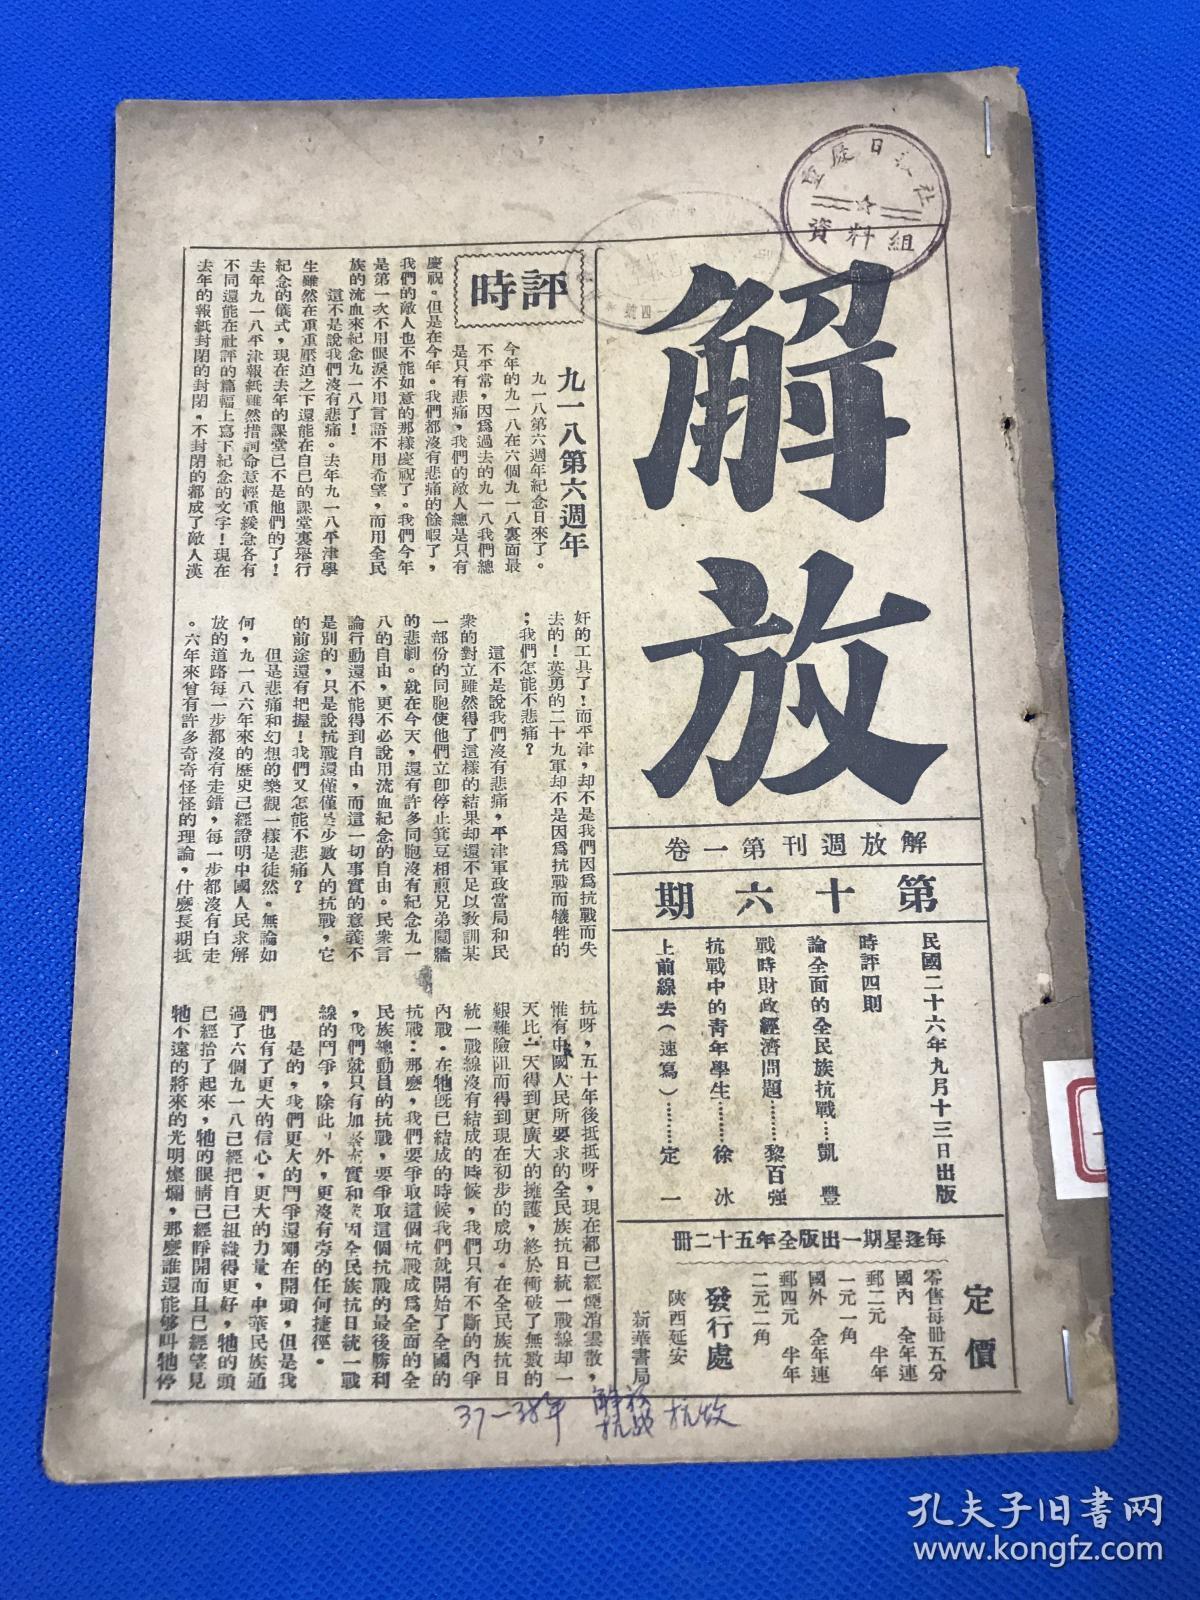 1937年 中国共产党政治理论刊物 《解放》第一卷 第16期 内容有 论全面的全民族抗战  战时财政经济问题 抗战中的青年学生  大开本 26.2*18.3